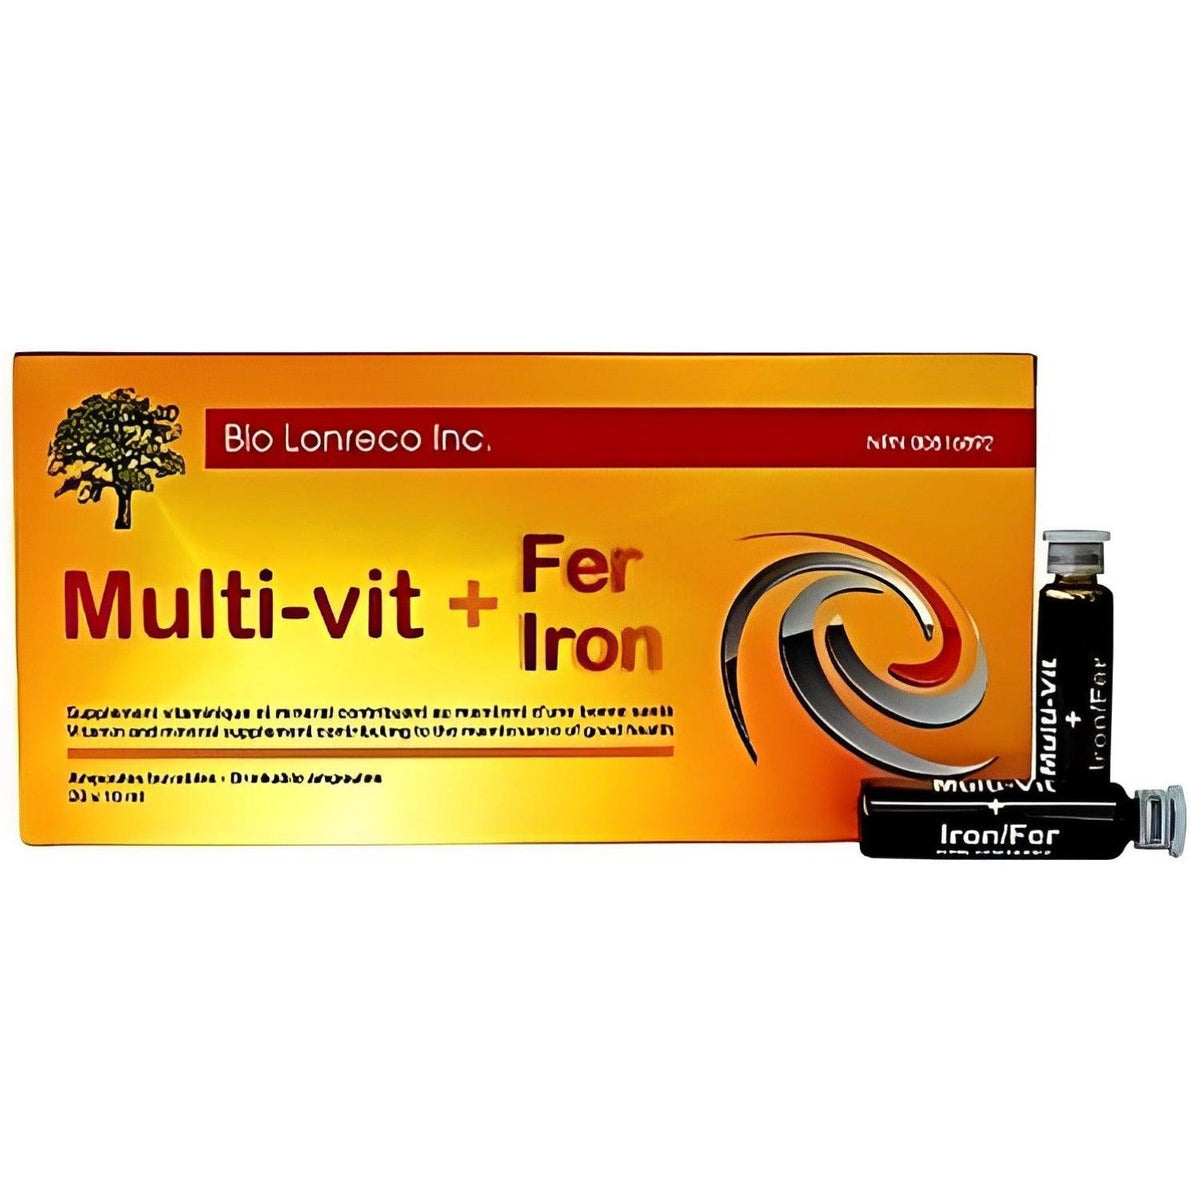 Bio Lonreco Inc. Multi-Vitamin + Iron 20x10mL Vitamins - Multivitamins at Village Vitamin Store